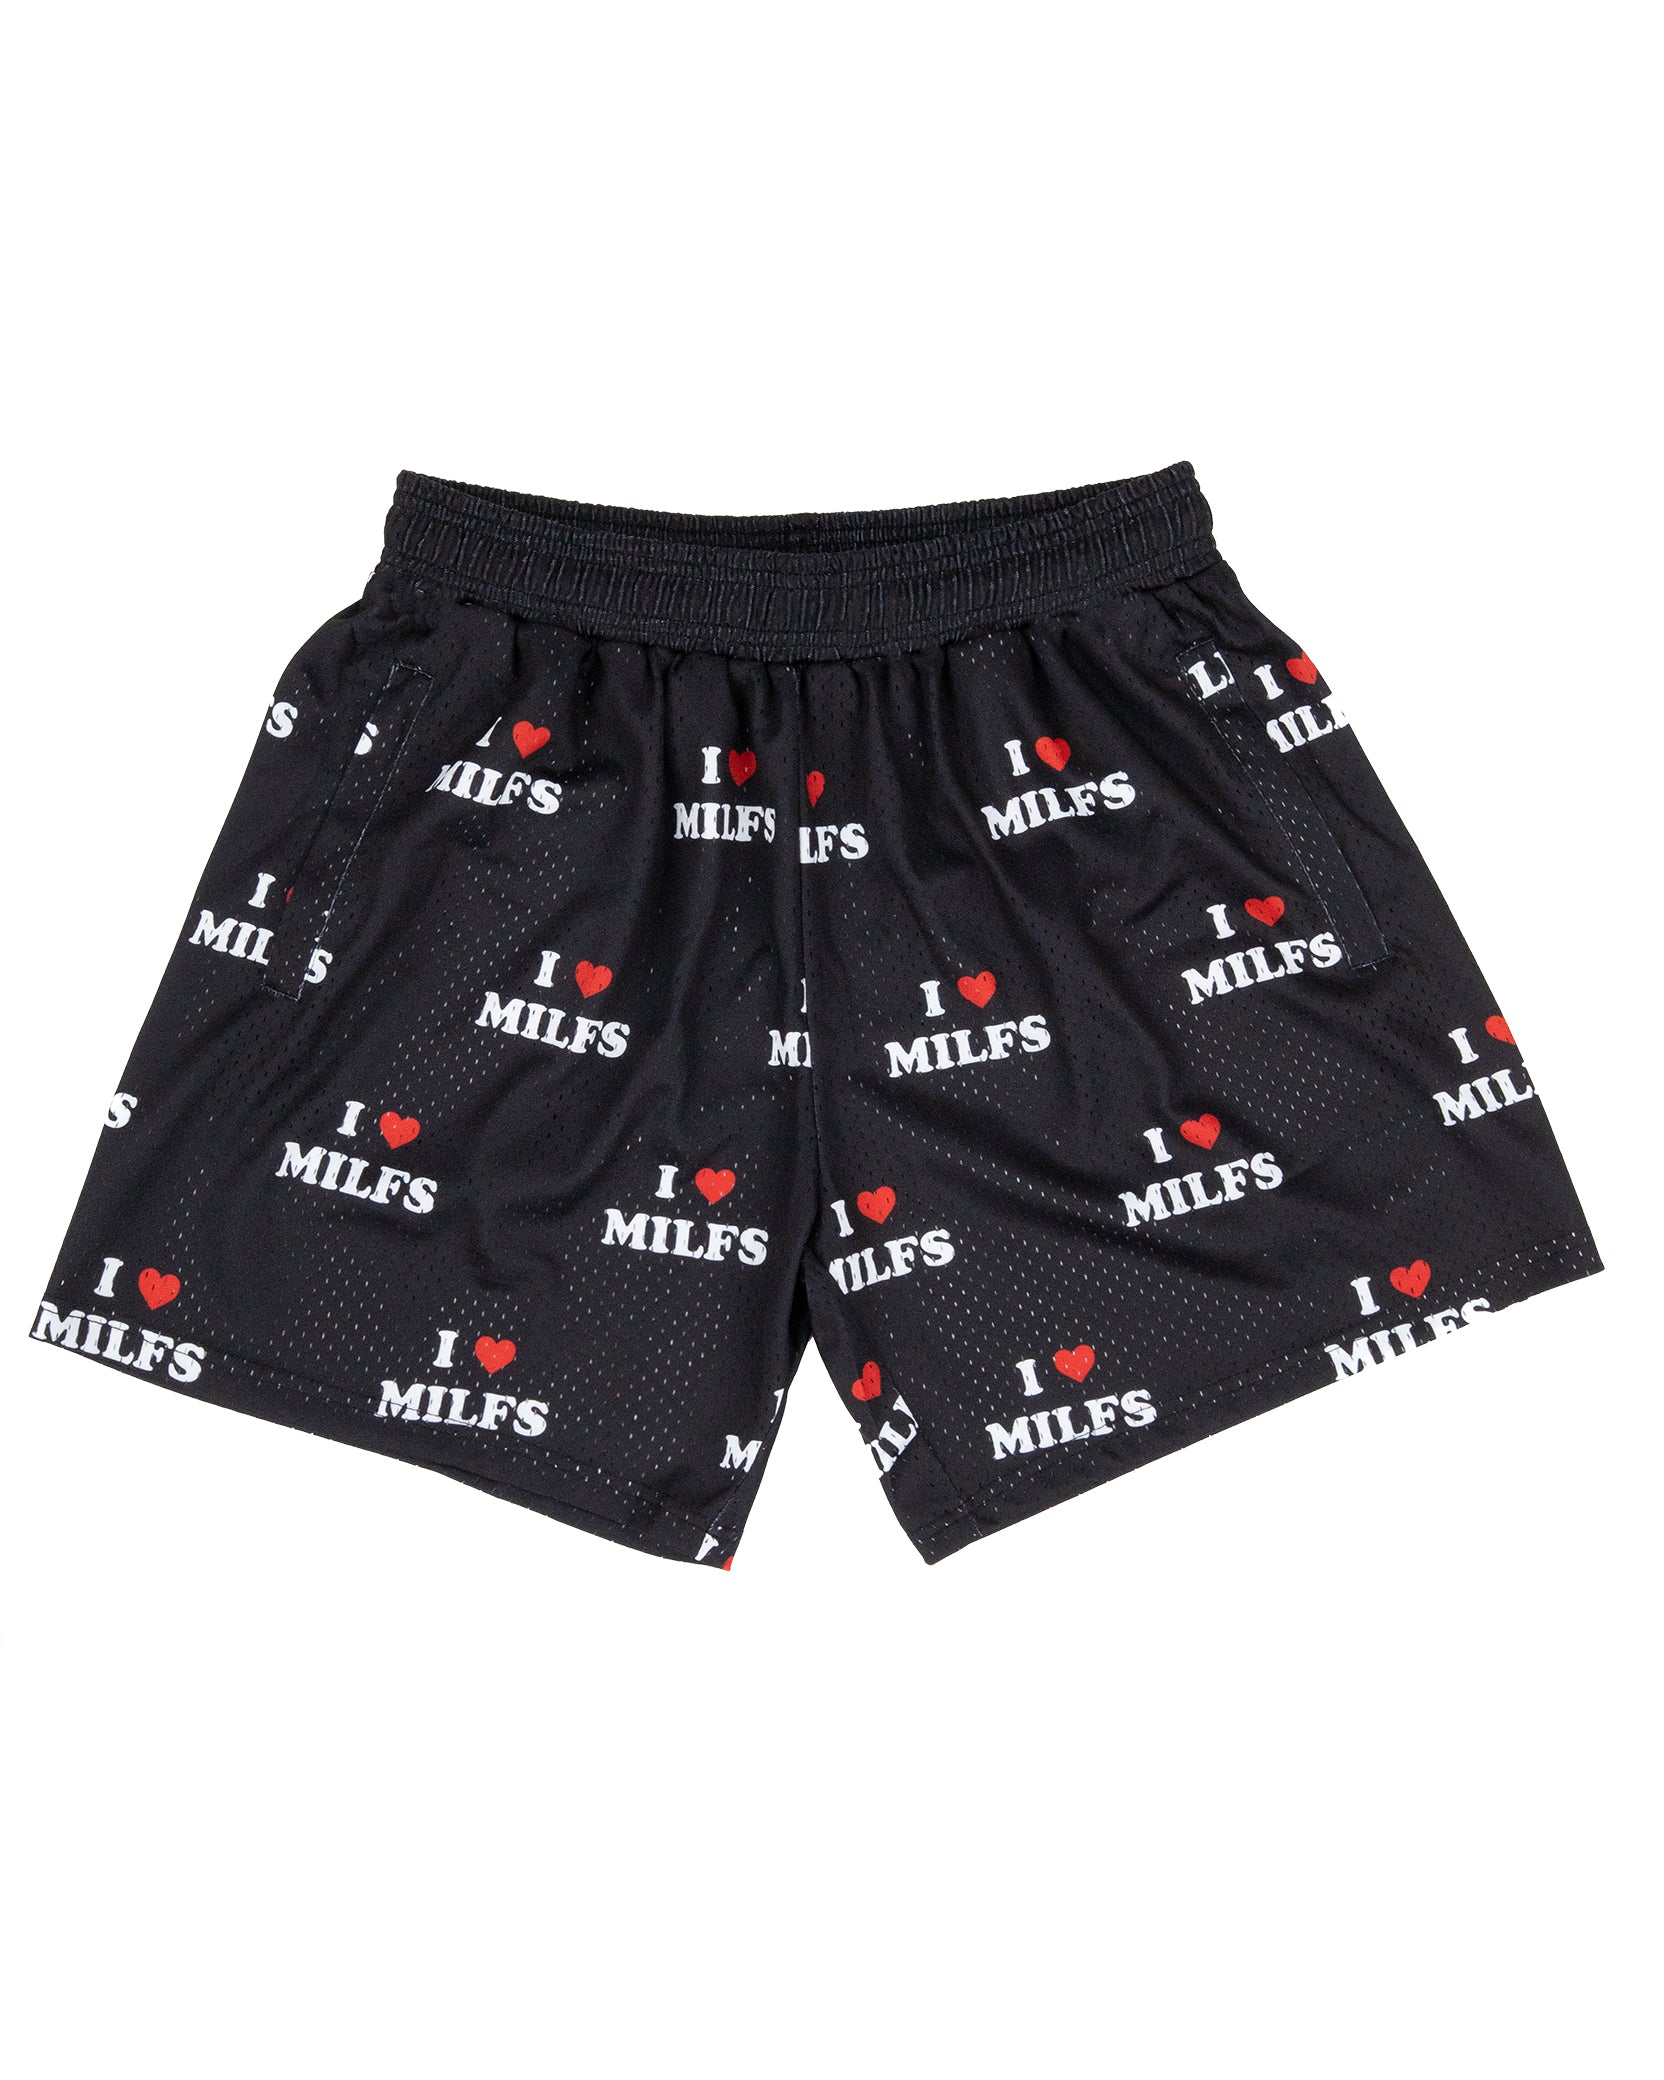 I <3 Milfs Shorts - Black